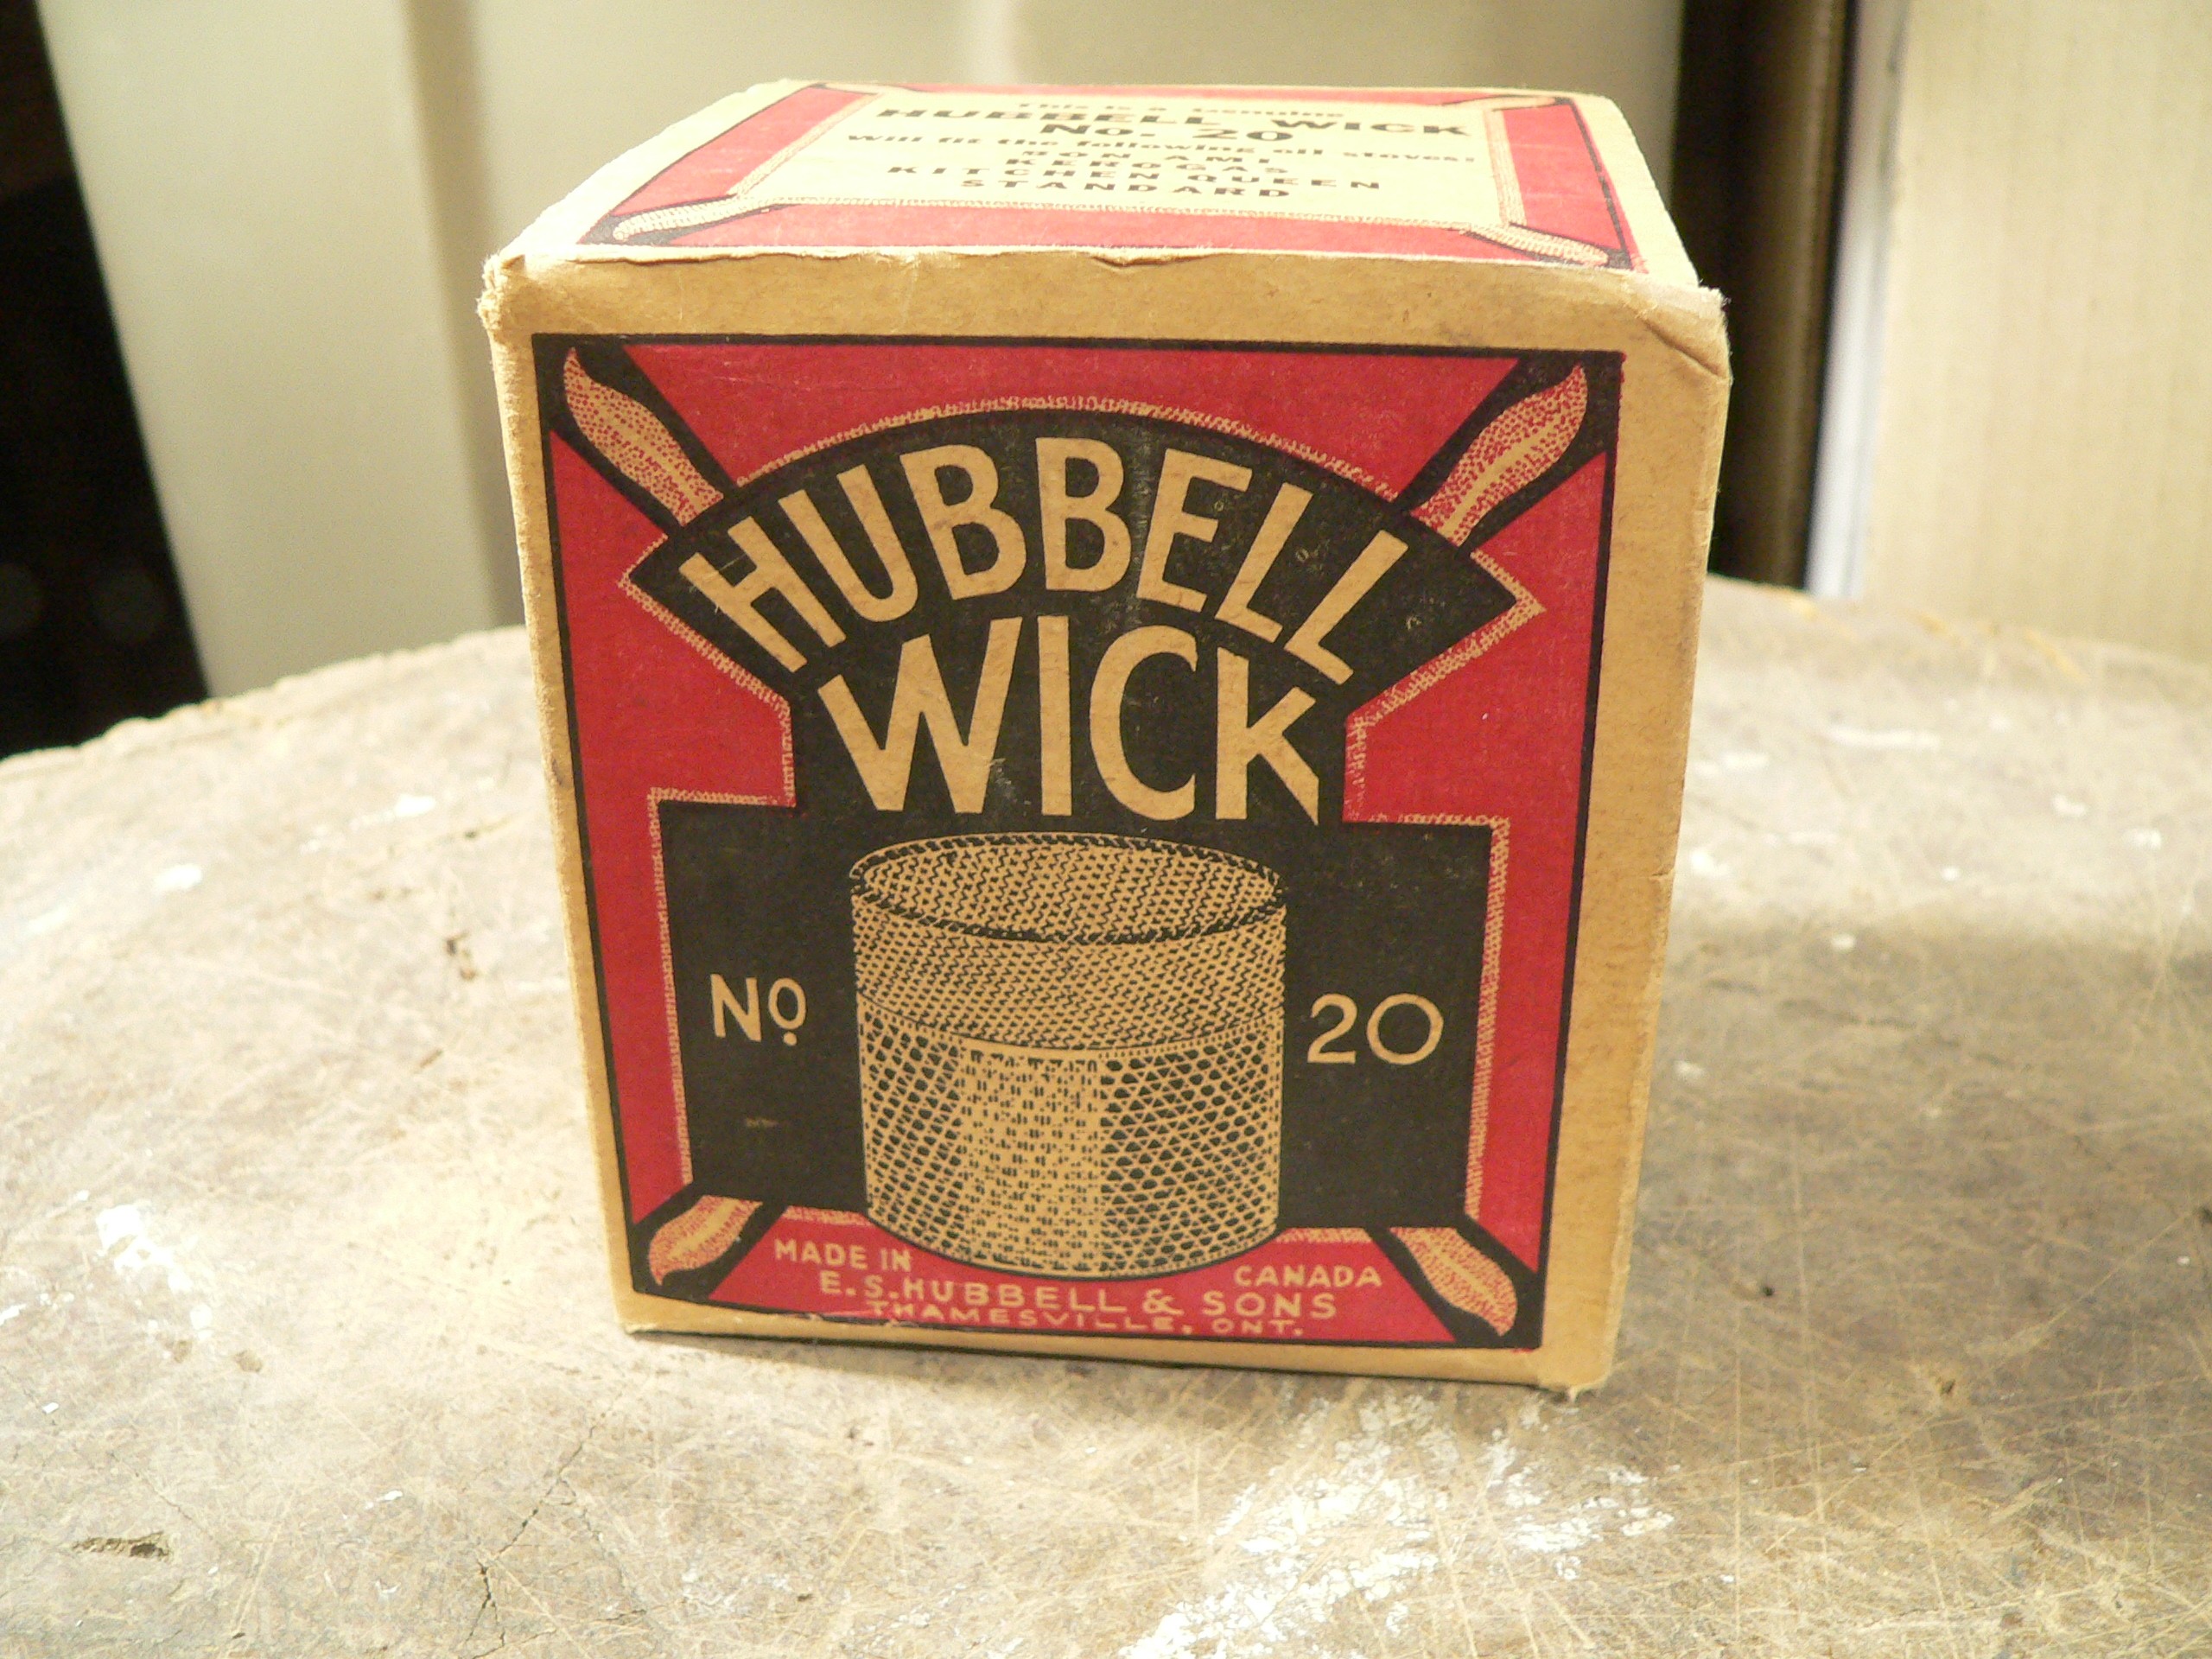 Boite Hubbell wick # 20 # 7931.4 